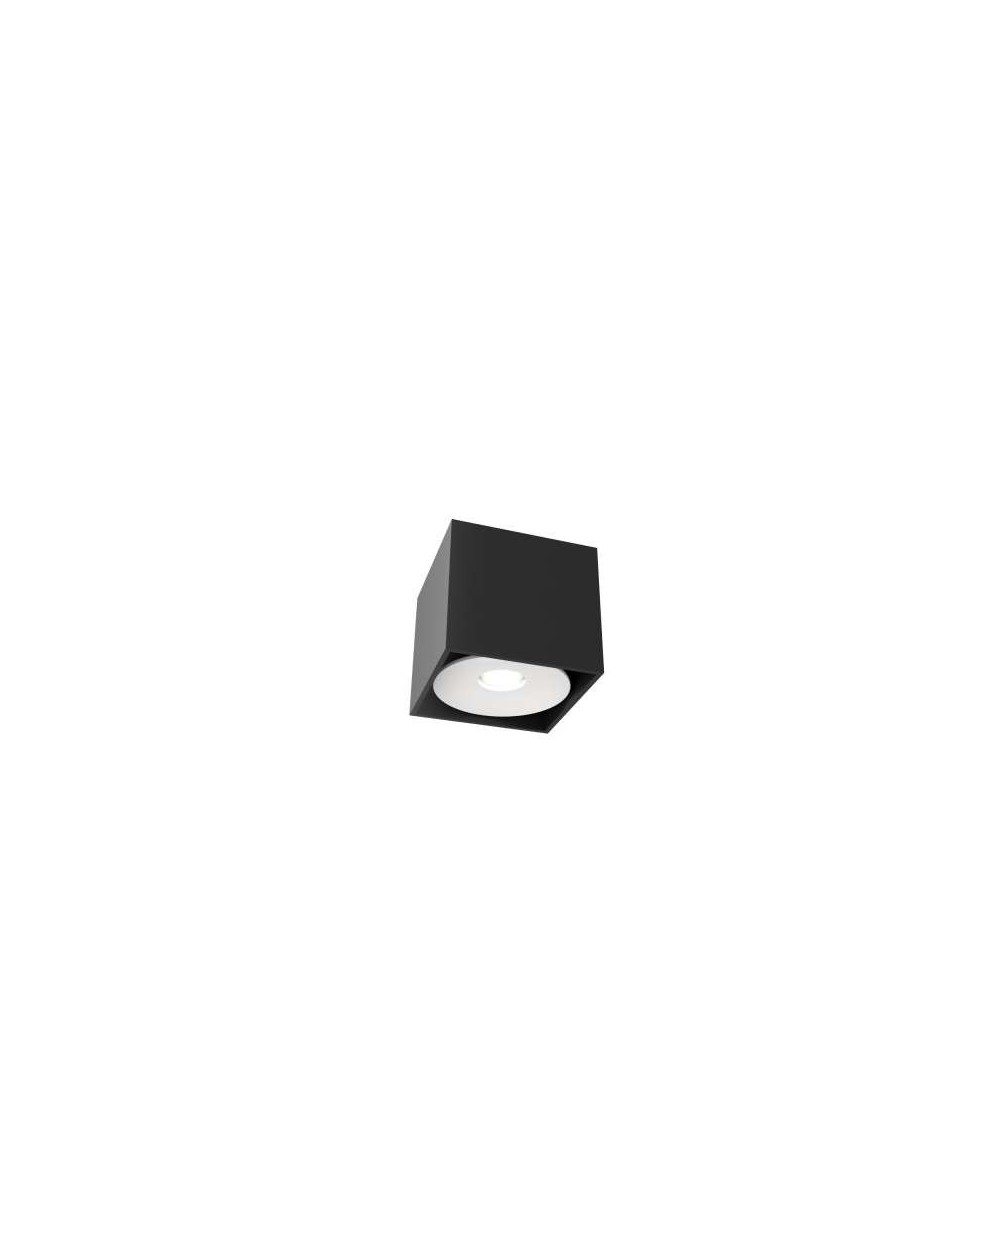 Oprawa natynkowa CARDI I Small Nero/Bianco - Orlicki Design w kolorze czarno-białym lampa natynkowa sufitowa